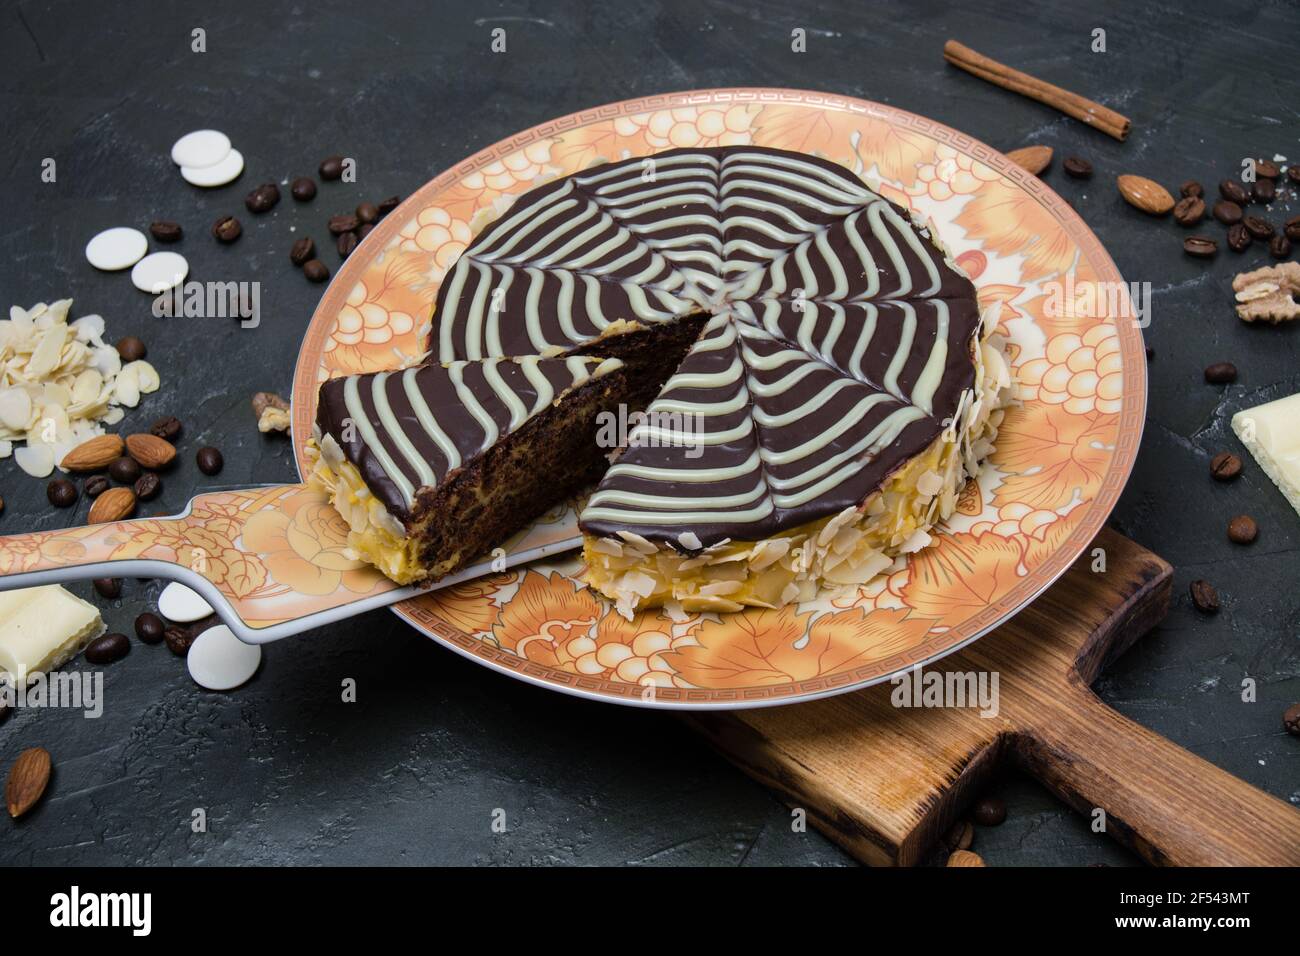 Schokolade in Scheiben geschnitten esterhazy Kuchen mit Sahne, Zuckerguss, Nüsse, Zimt und Mandeln Nahaufnahme von oben auf einem orange-braunen Teller, auf einem hölzernen Wildschwein Stockfoto